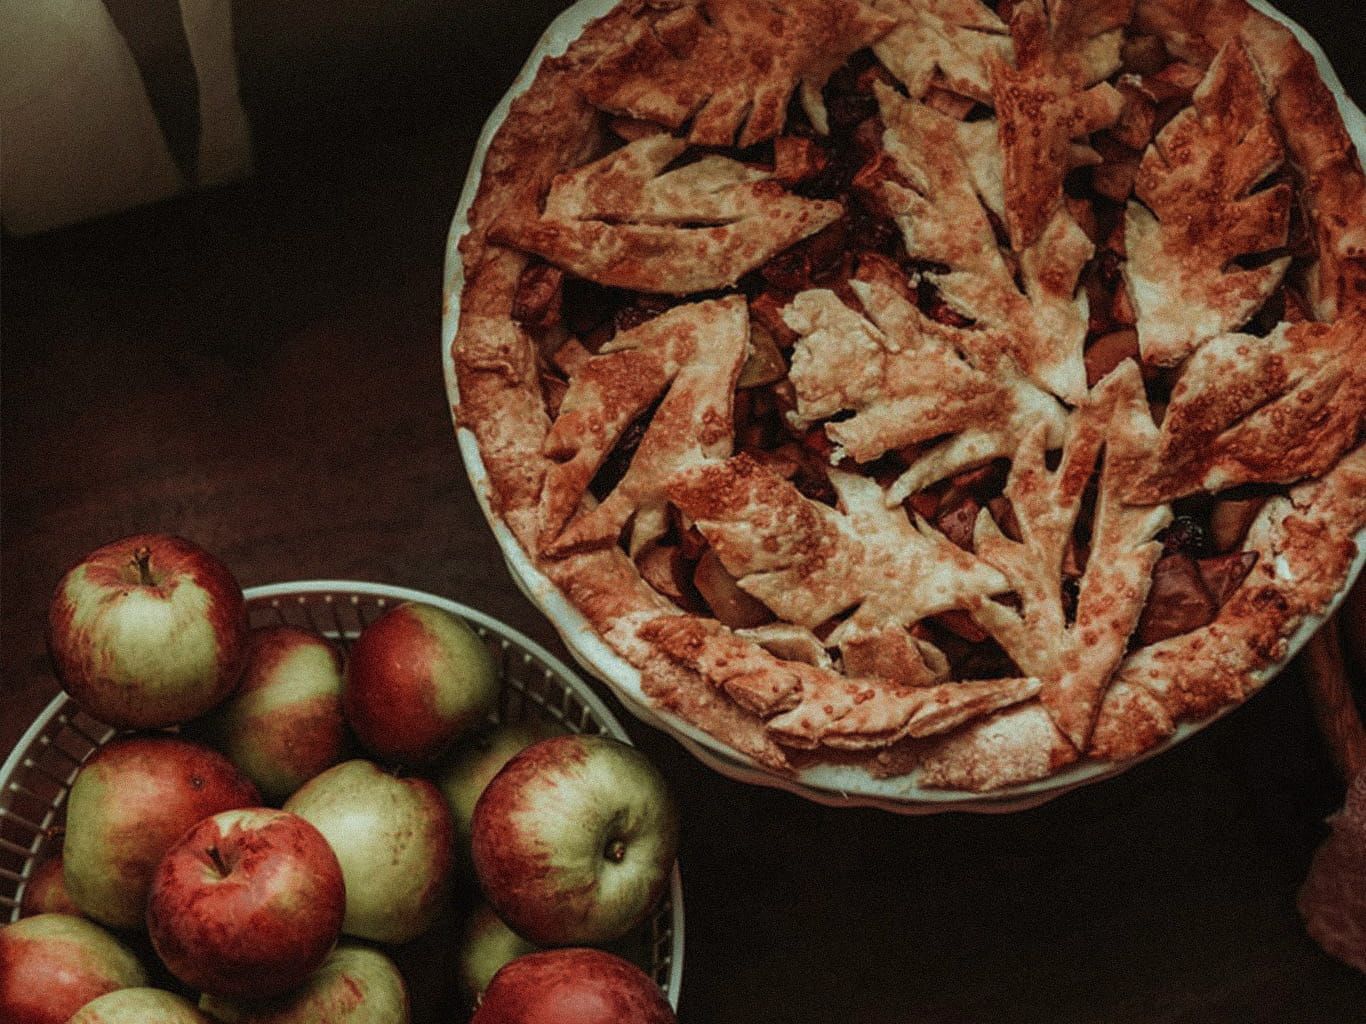 Selbstgemachter Ofenschlupfer sowie eine Schüssel voller Äpfel stehen auf einem Tisch